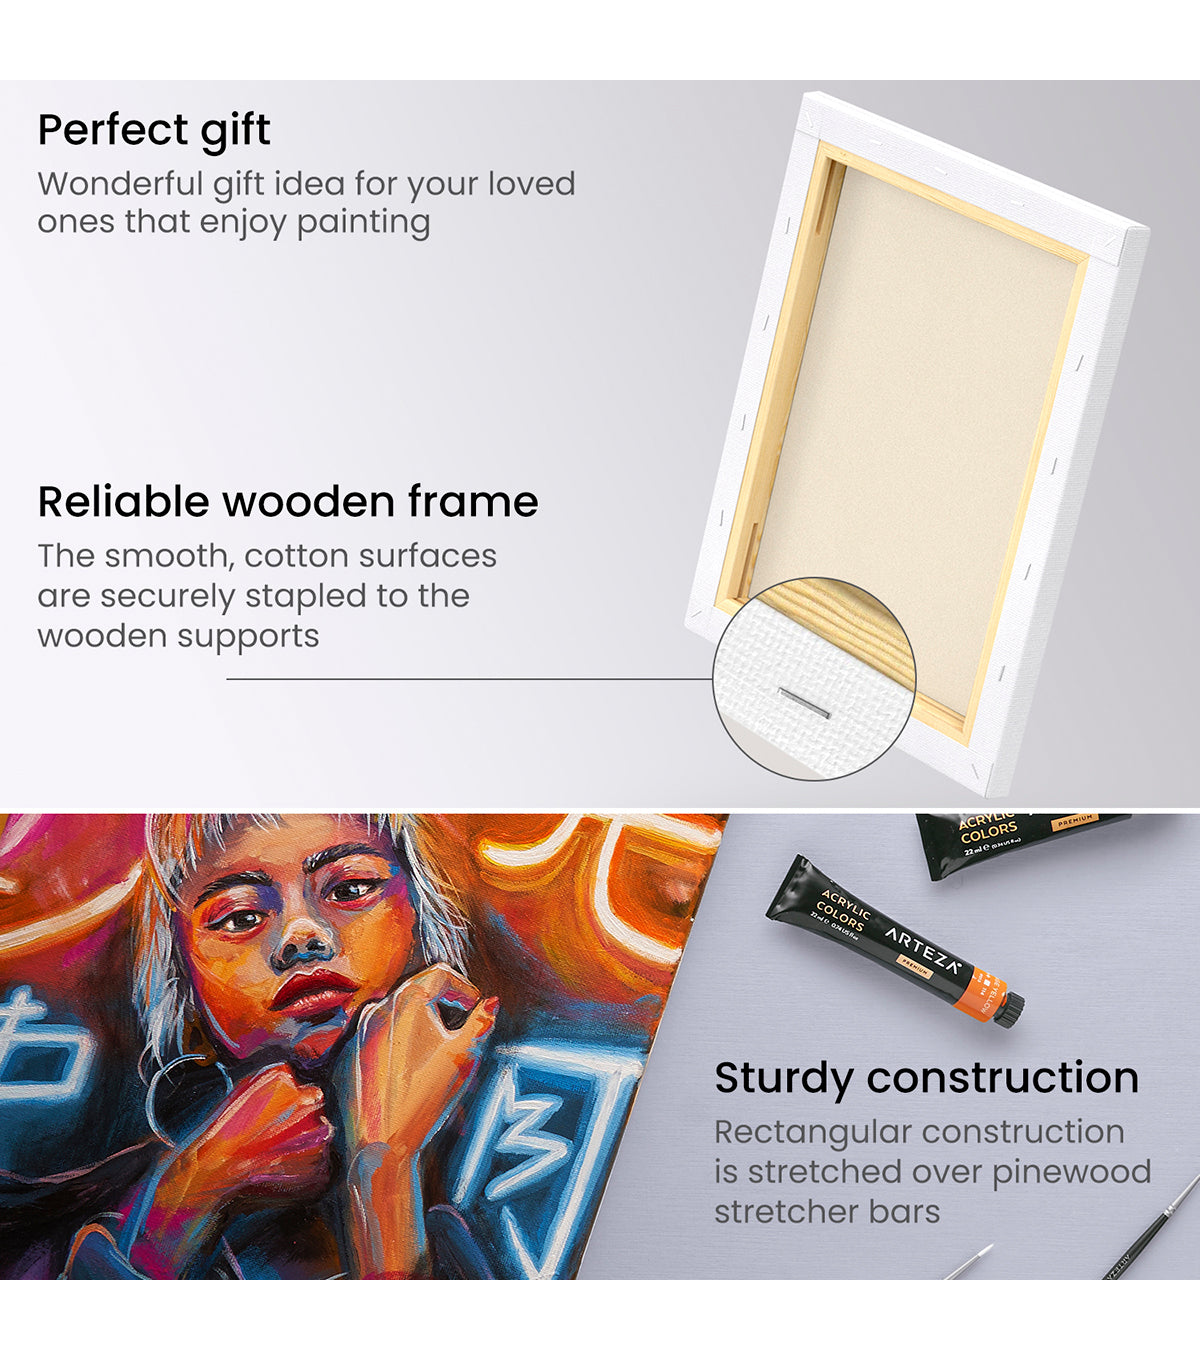 8 x 10 Canvas Panels - 12 Pack* – Artistik Art Materials